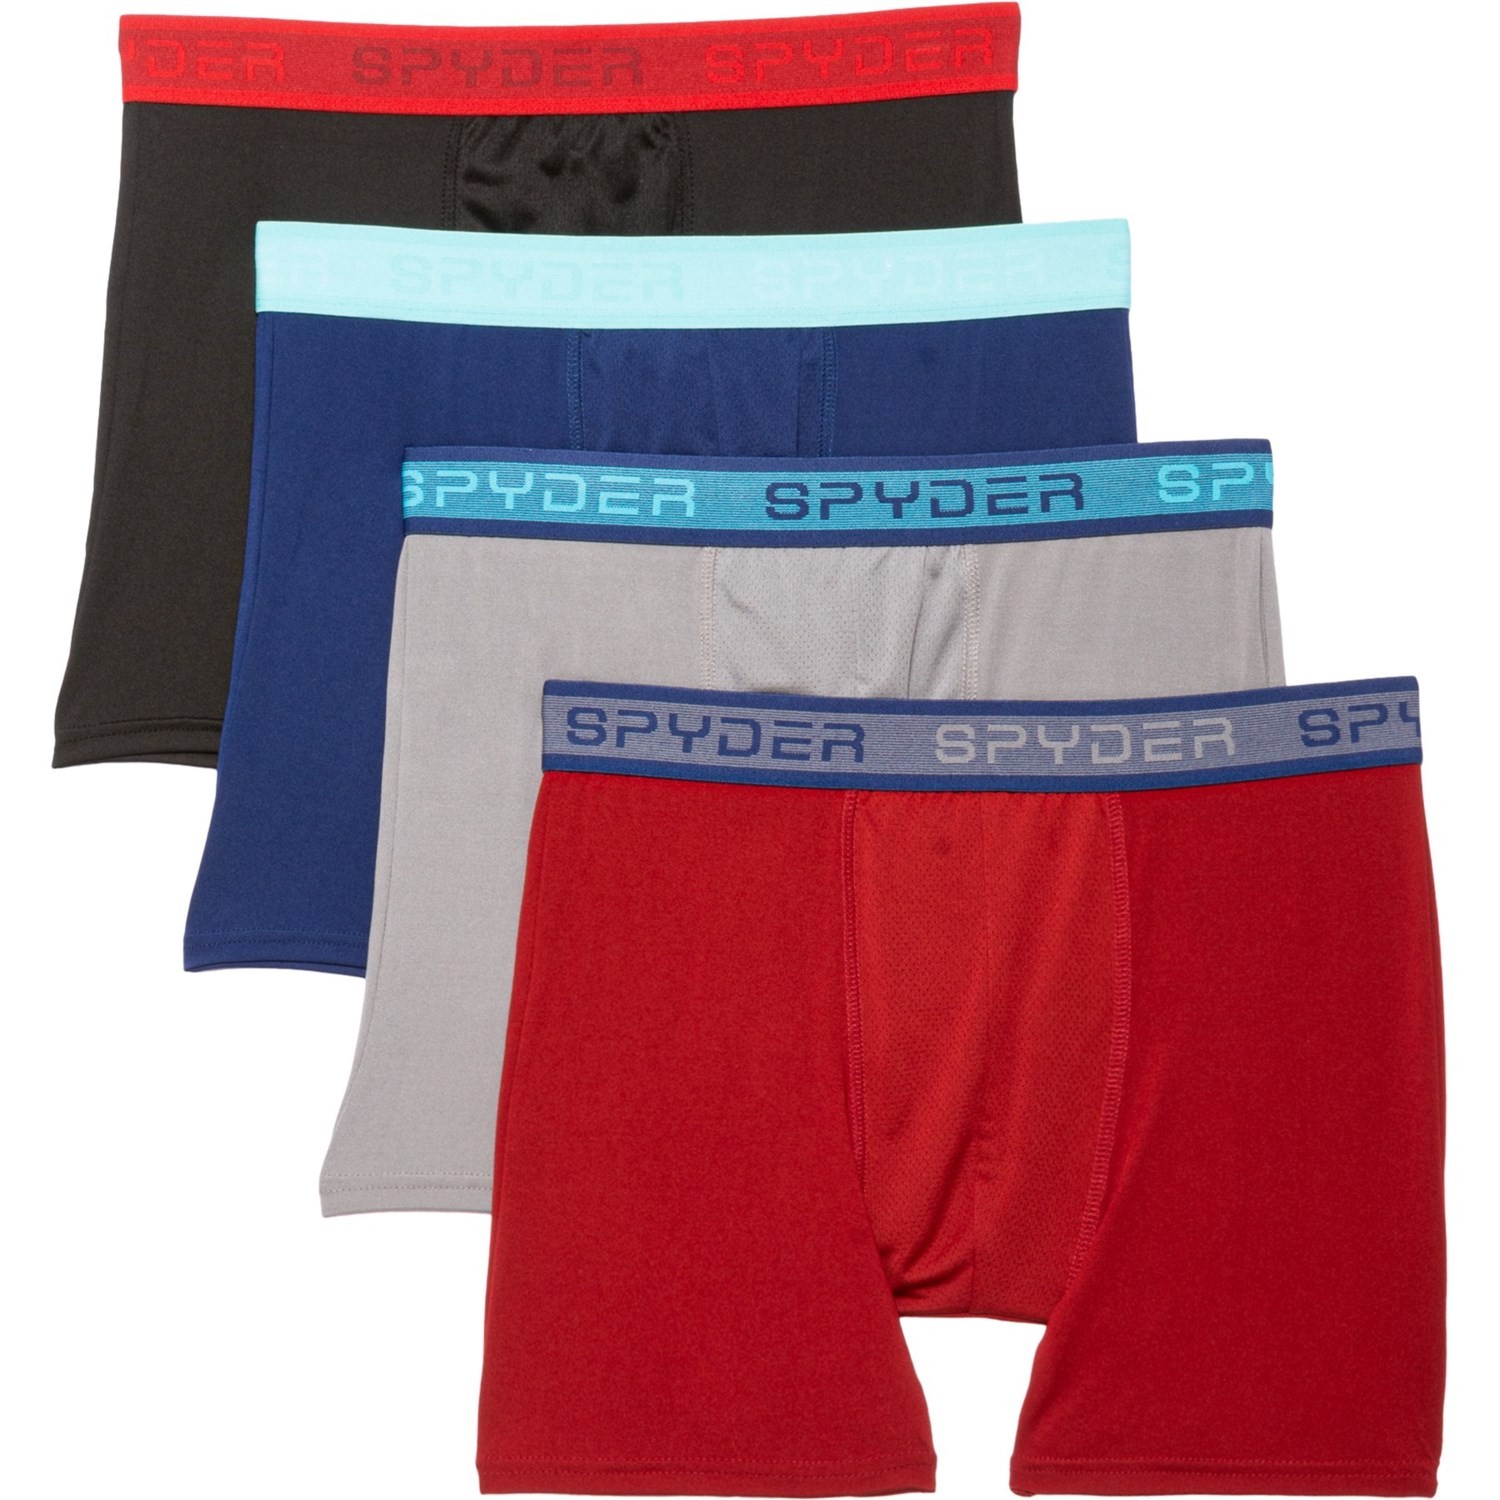 Spyder performance underwear